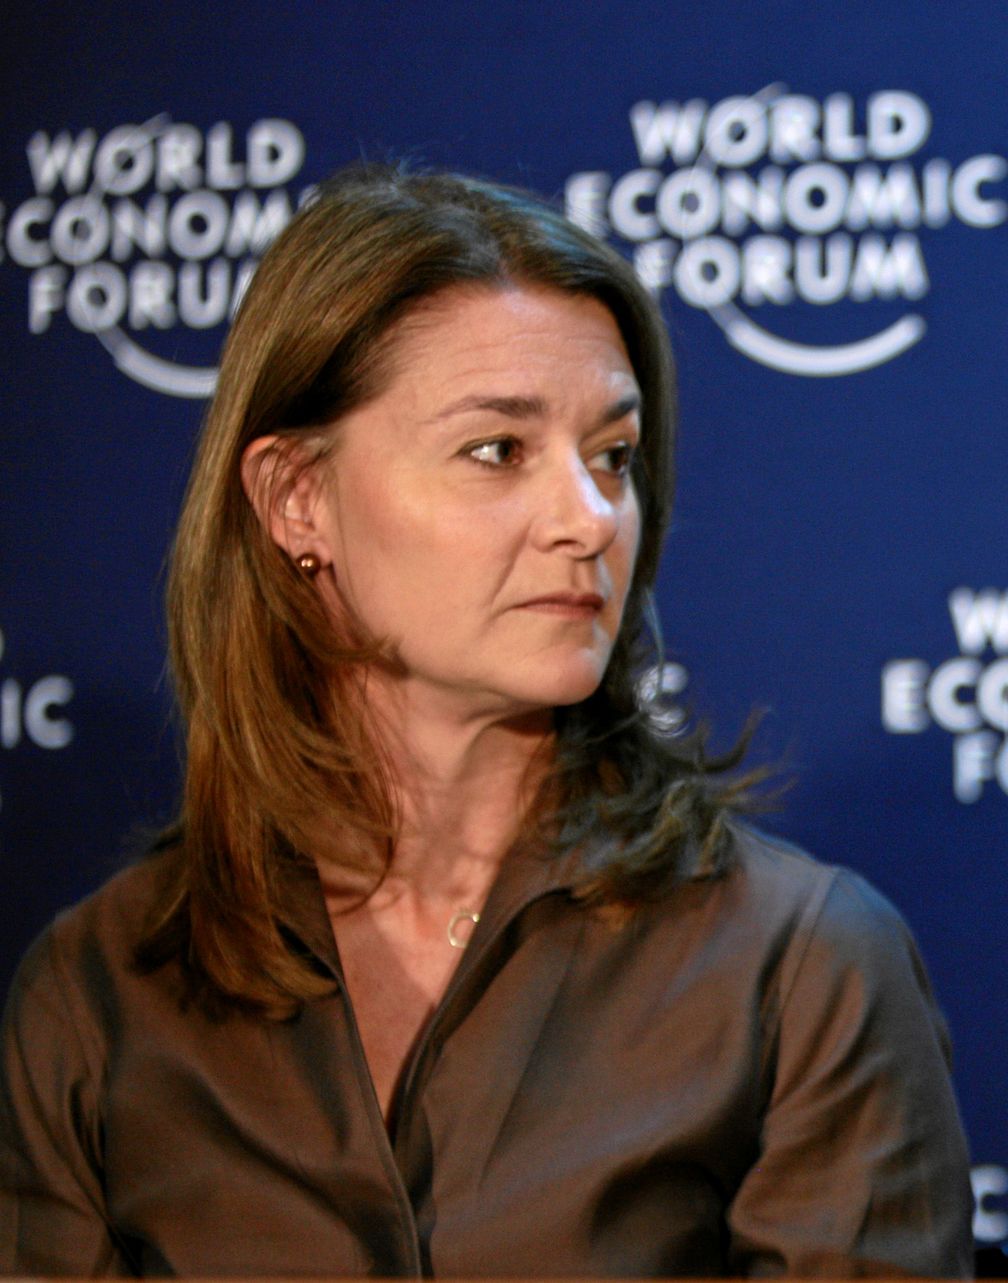 Melinda Gates 2009 in Davos